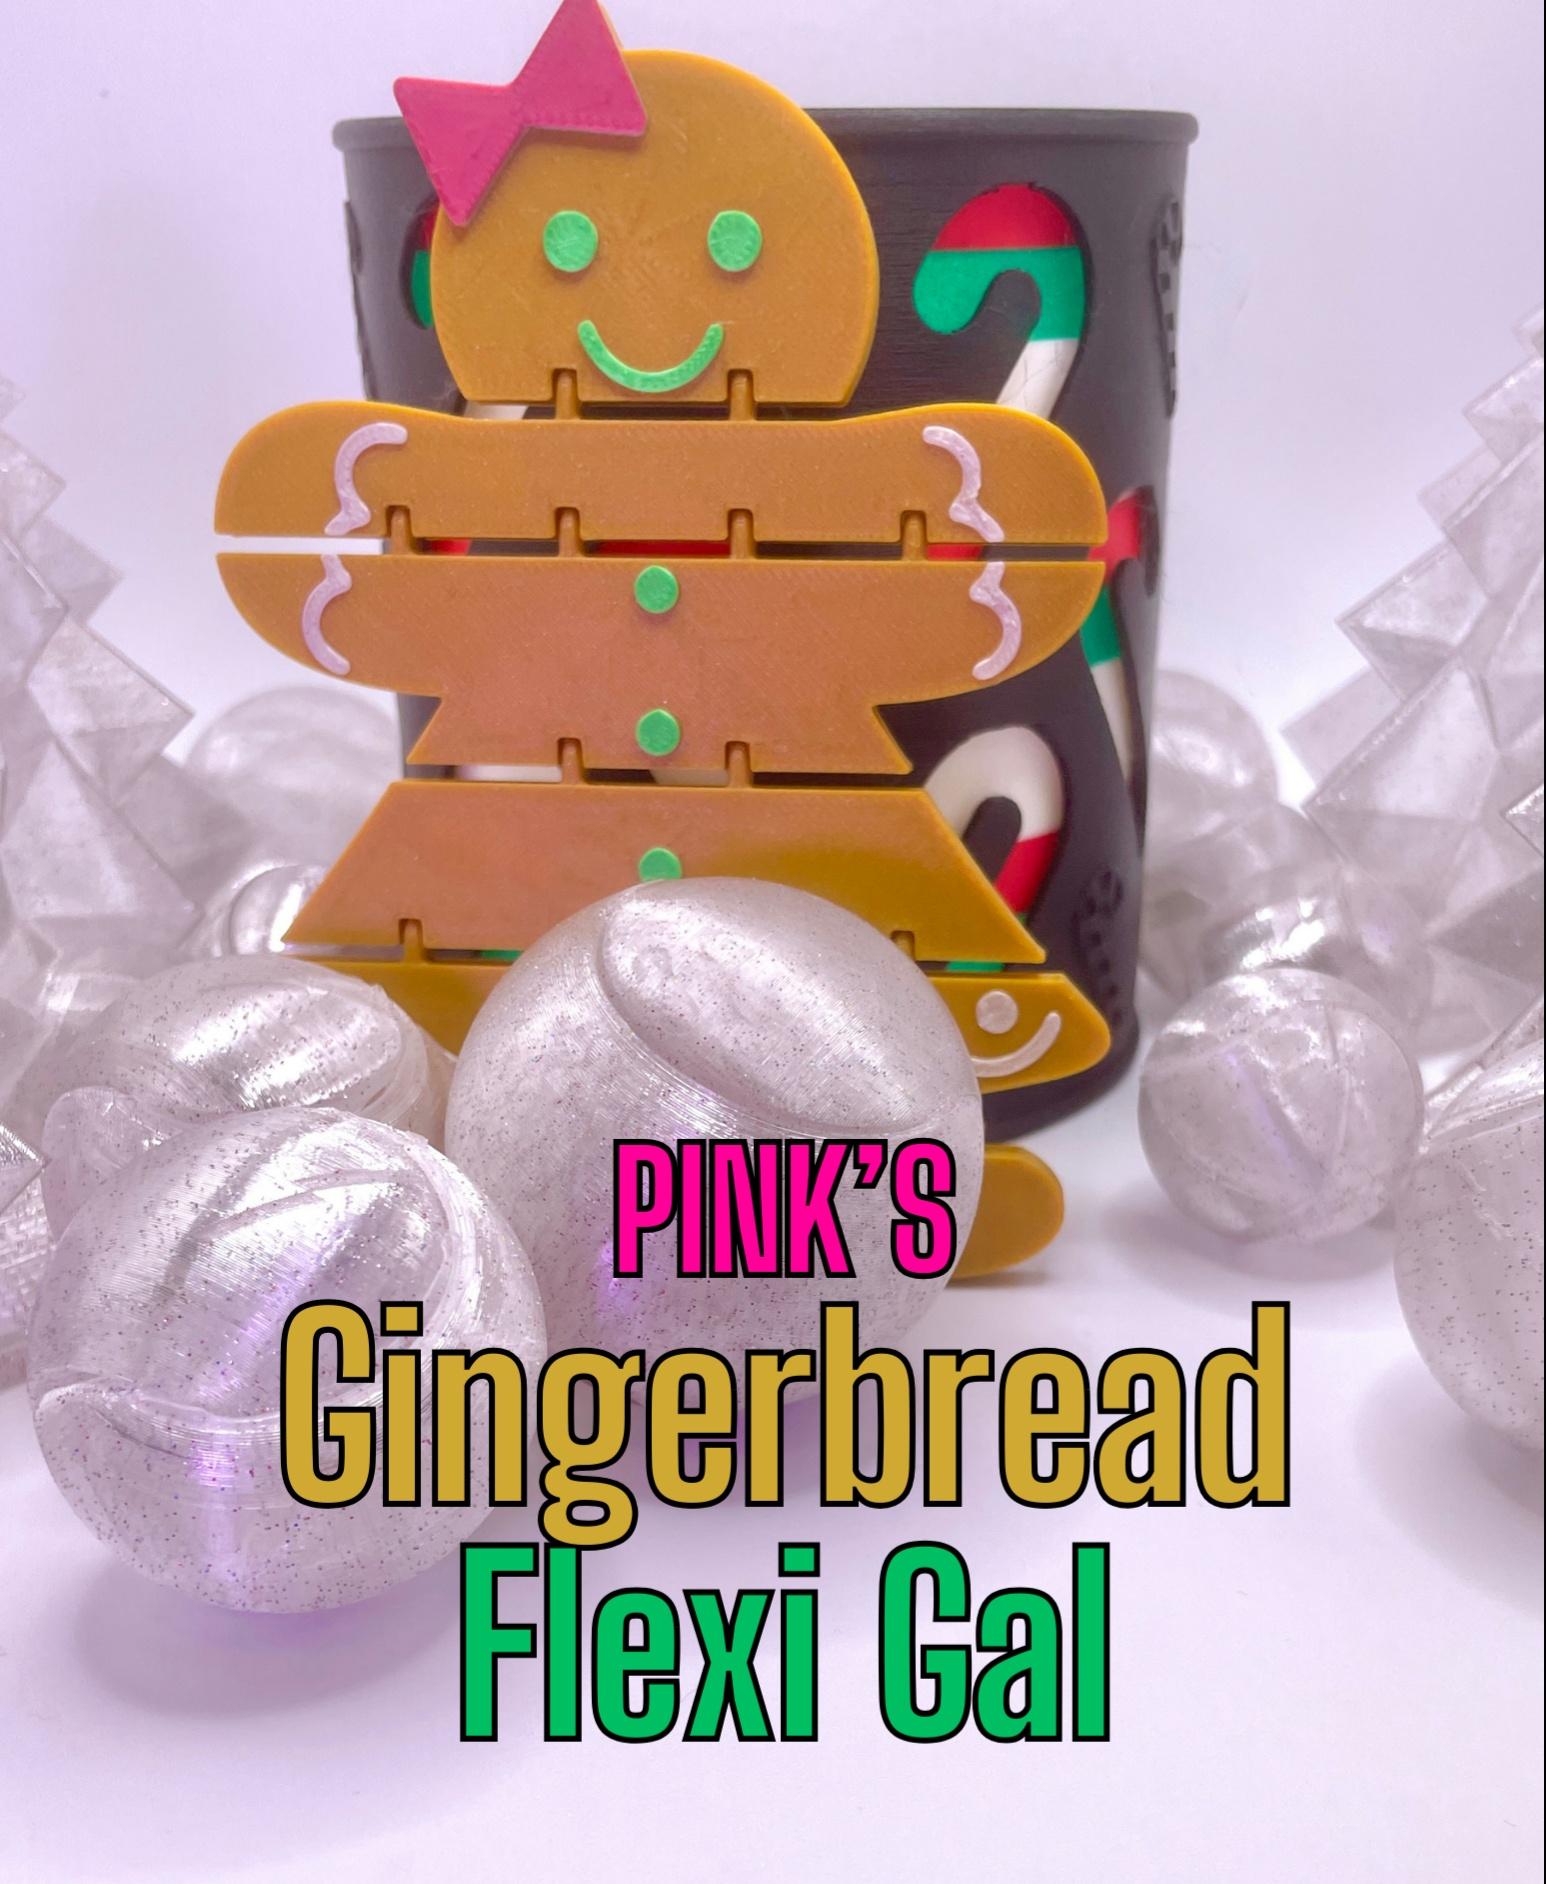 Gingerbread woman flexi - She is beauty, she is grace! - 3d model